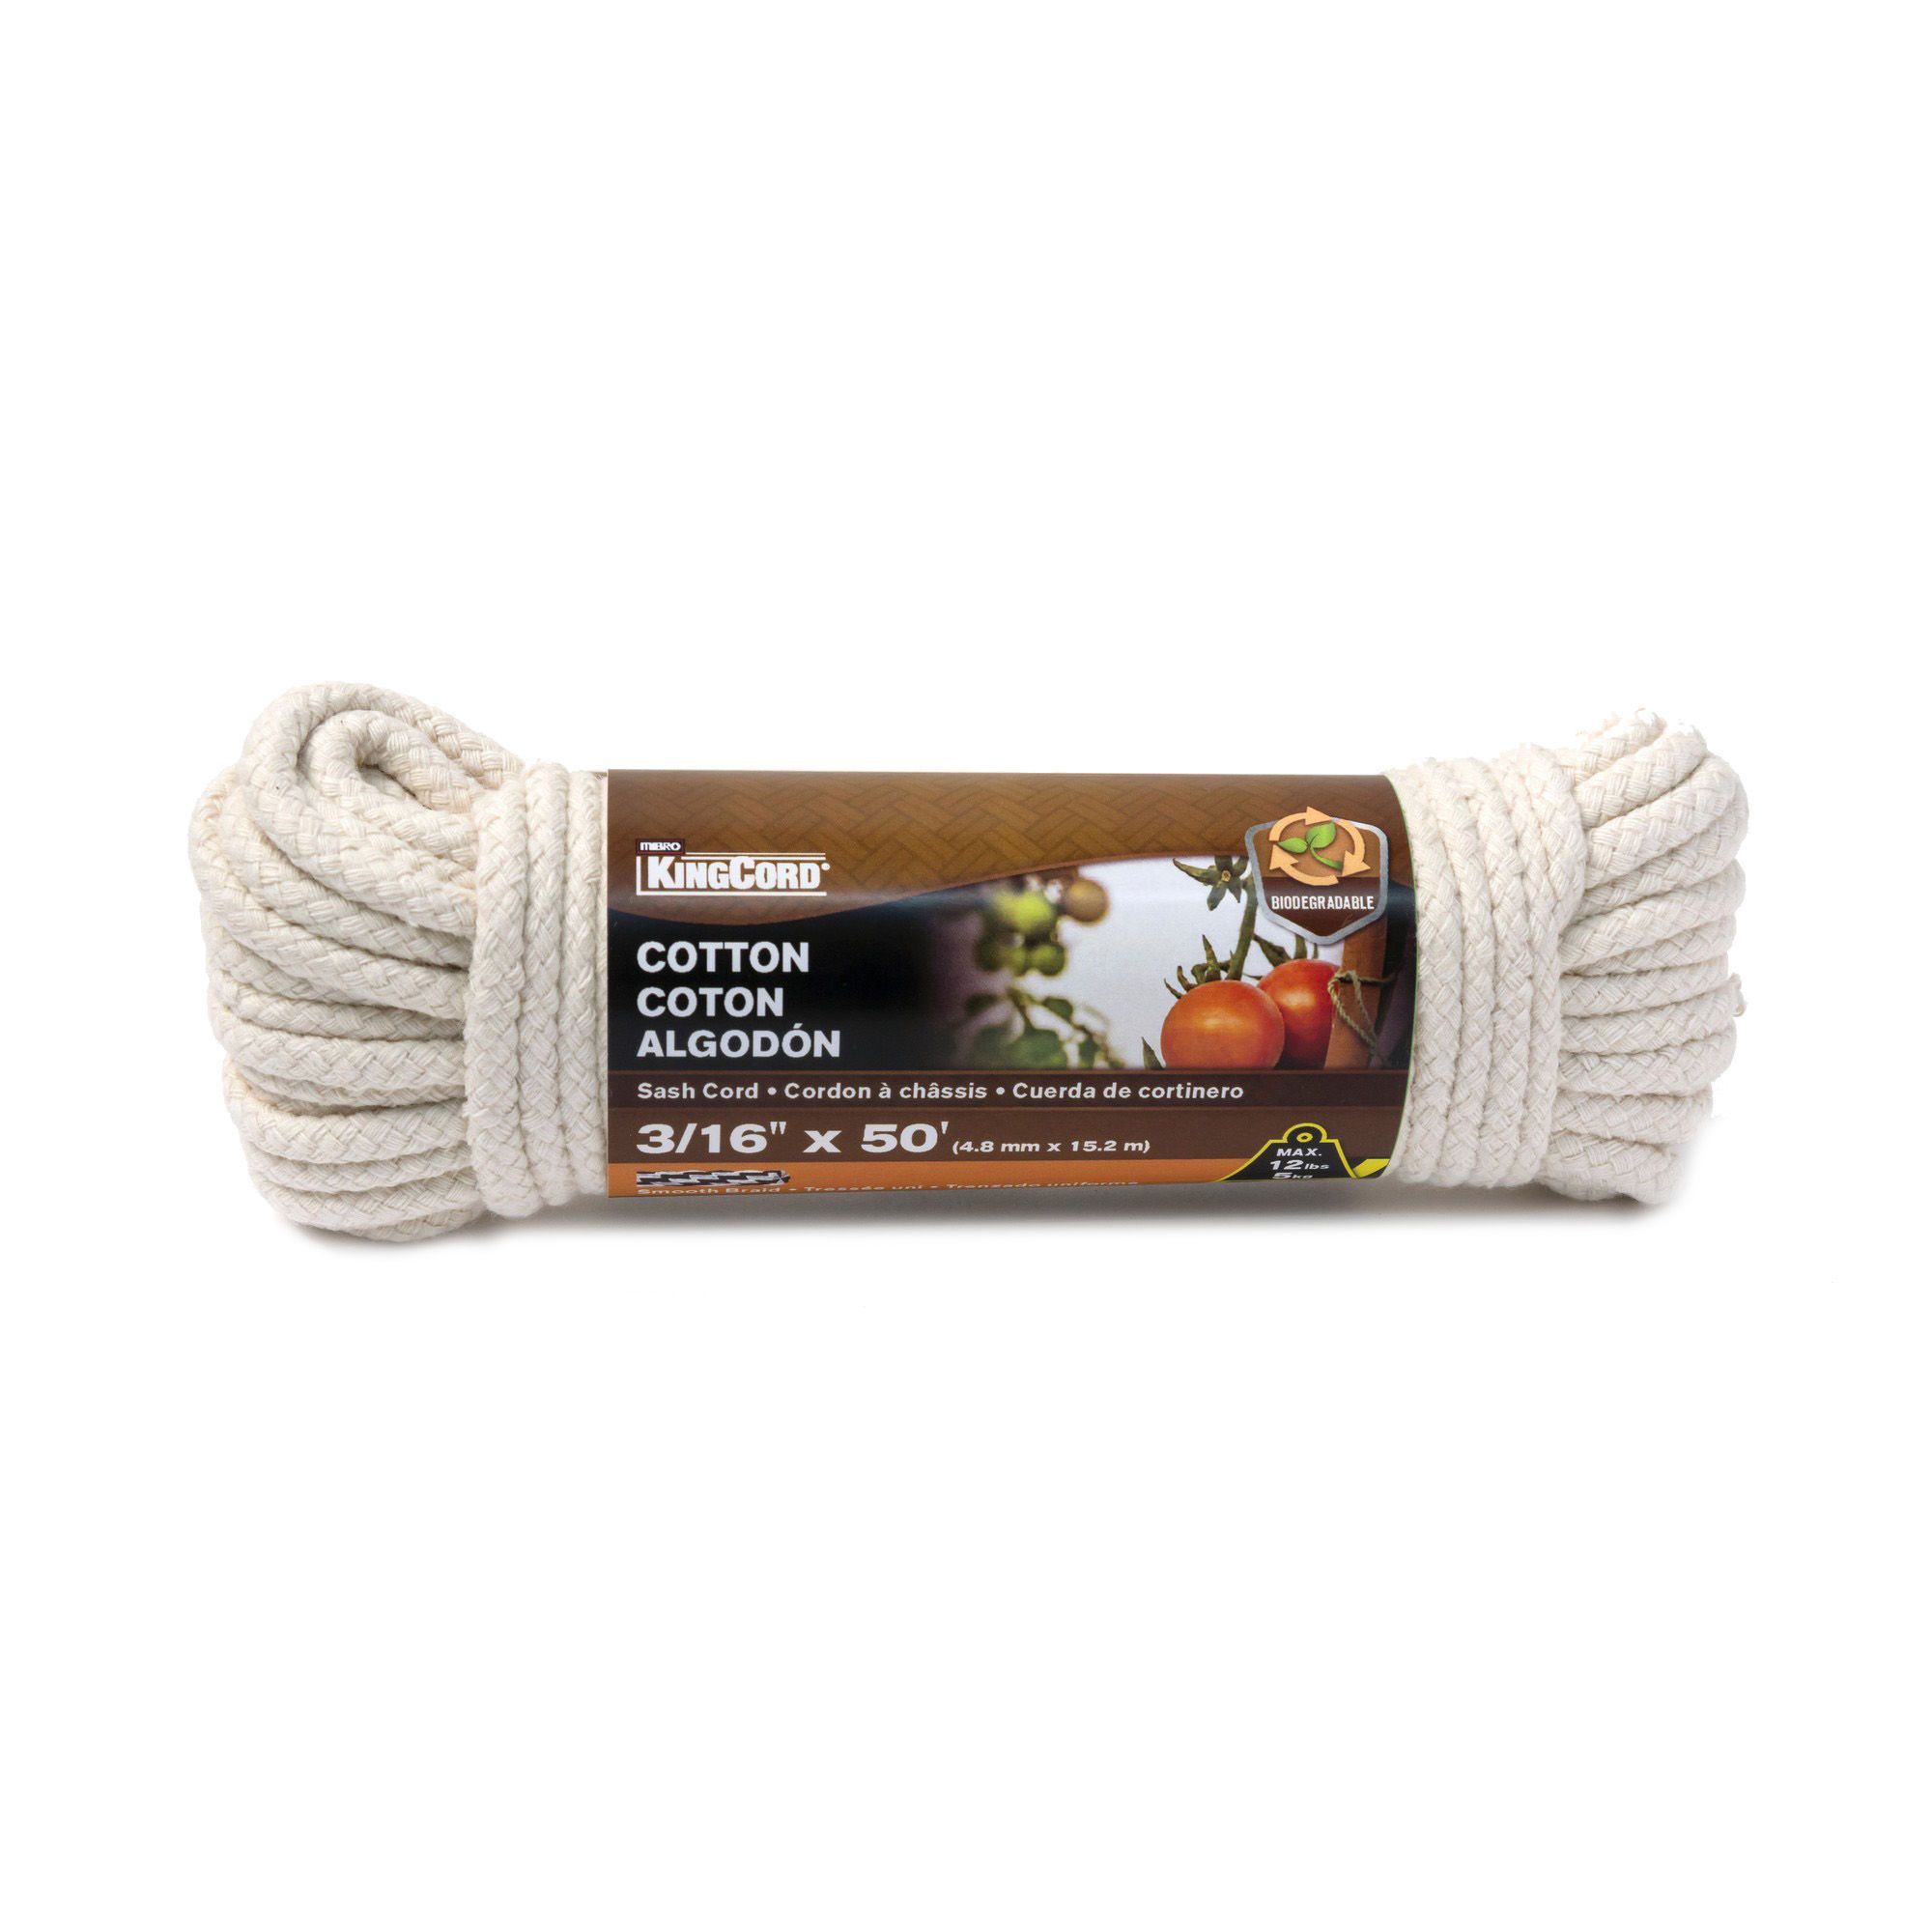 2pcs 10m Corde de coton doux, corde longue polyvalente épaisse utilitaire  cordon tressé pour le camping jardinage Attacher Artisanat